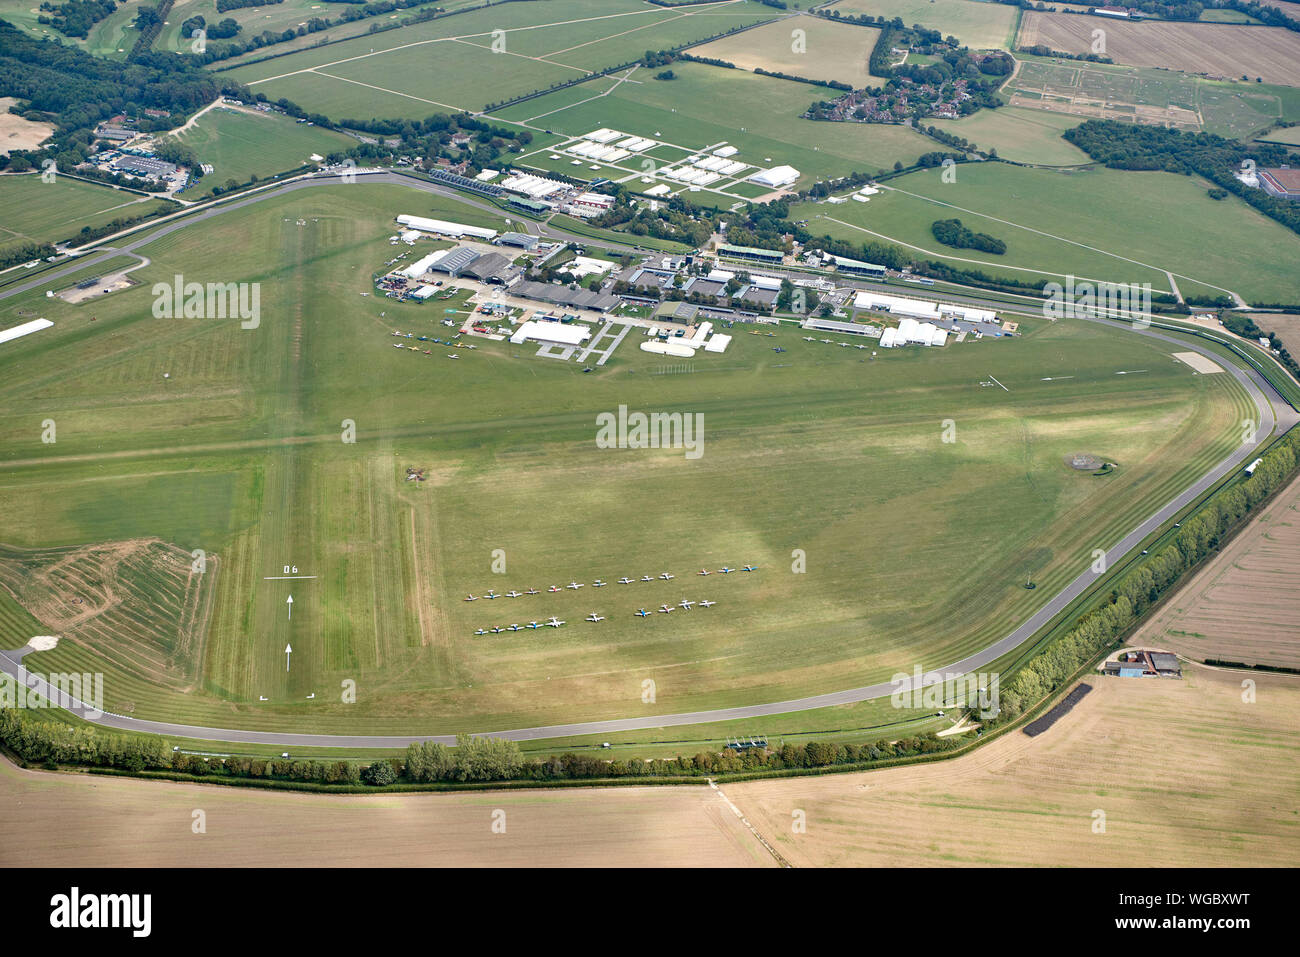 Eine Luftaufnahme des Flugplatzes Goodwood, Südostengland, Großbritannien Stockfoto